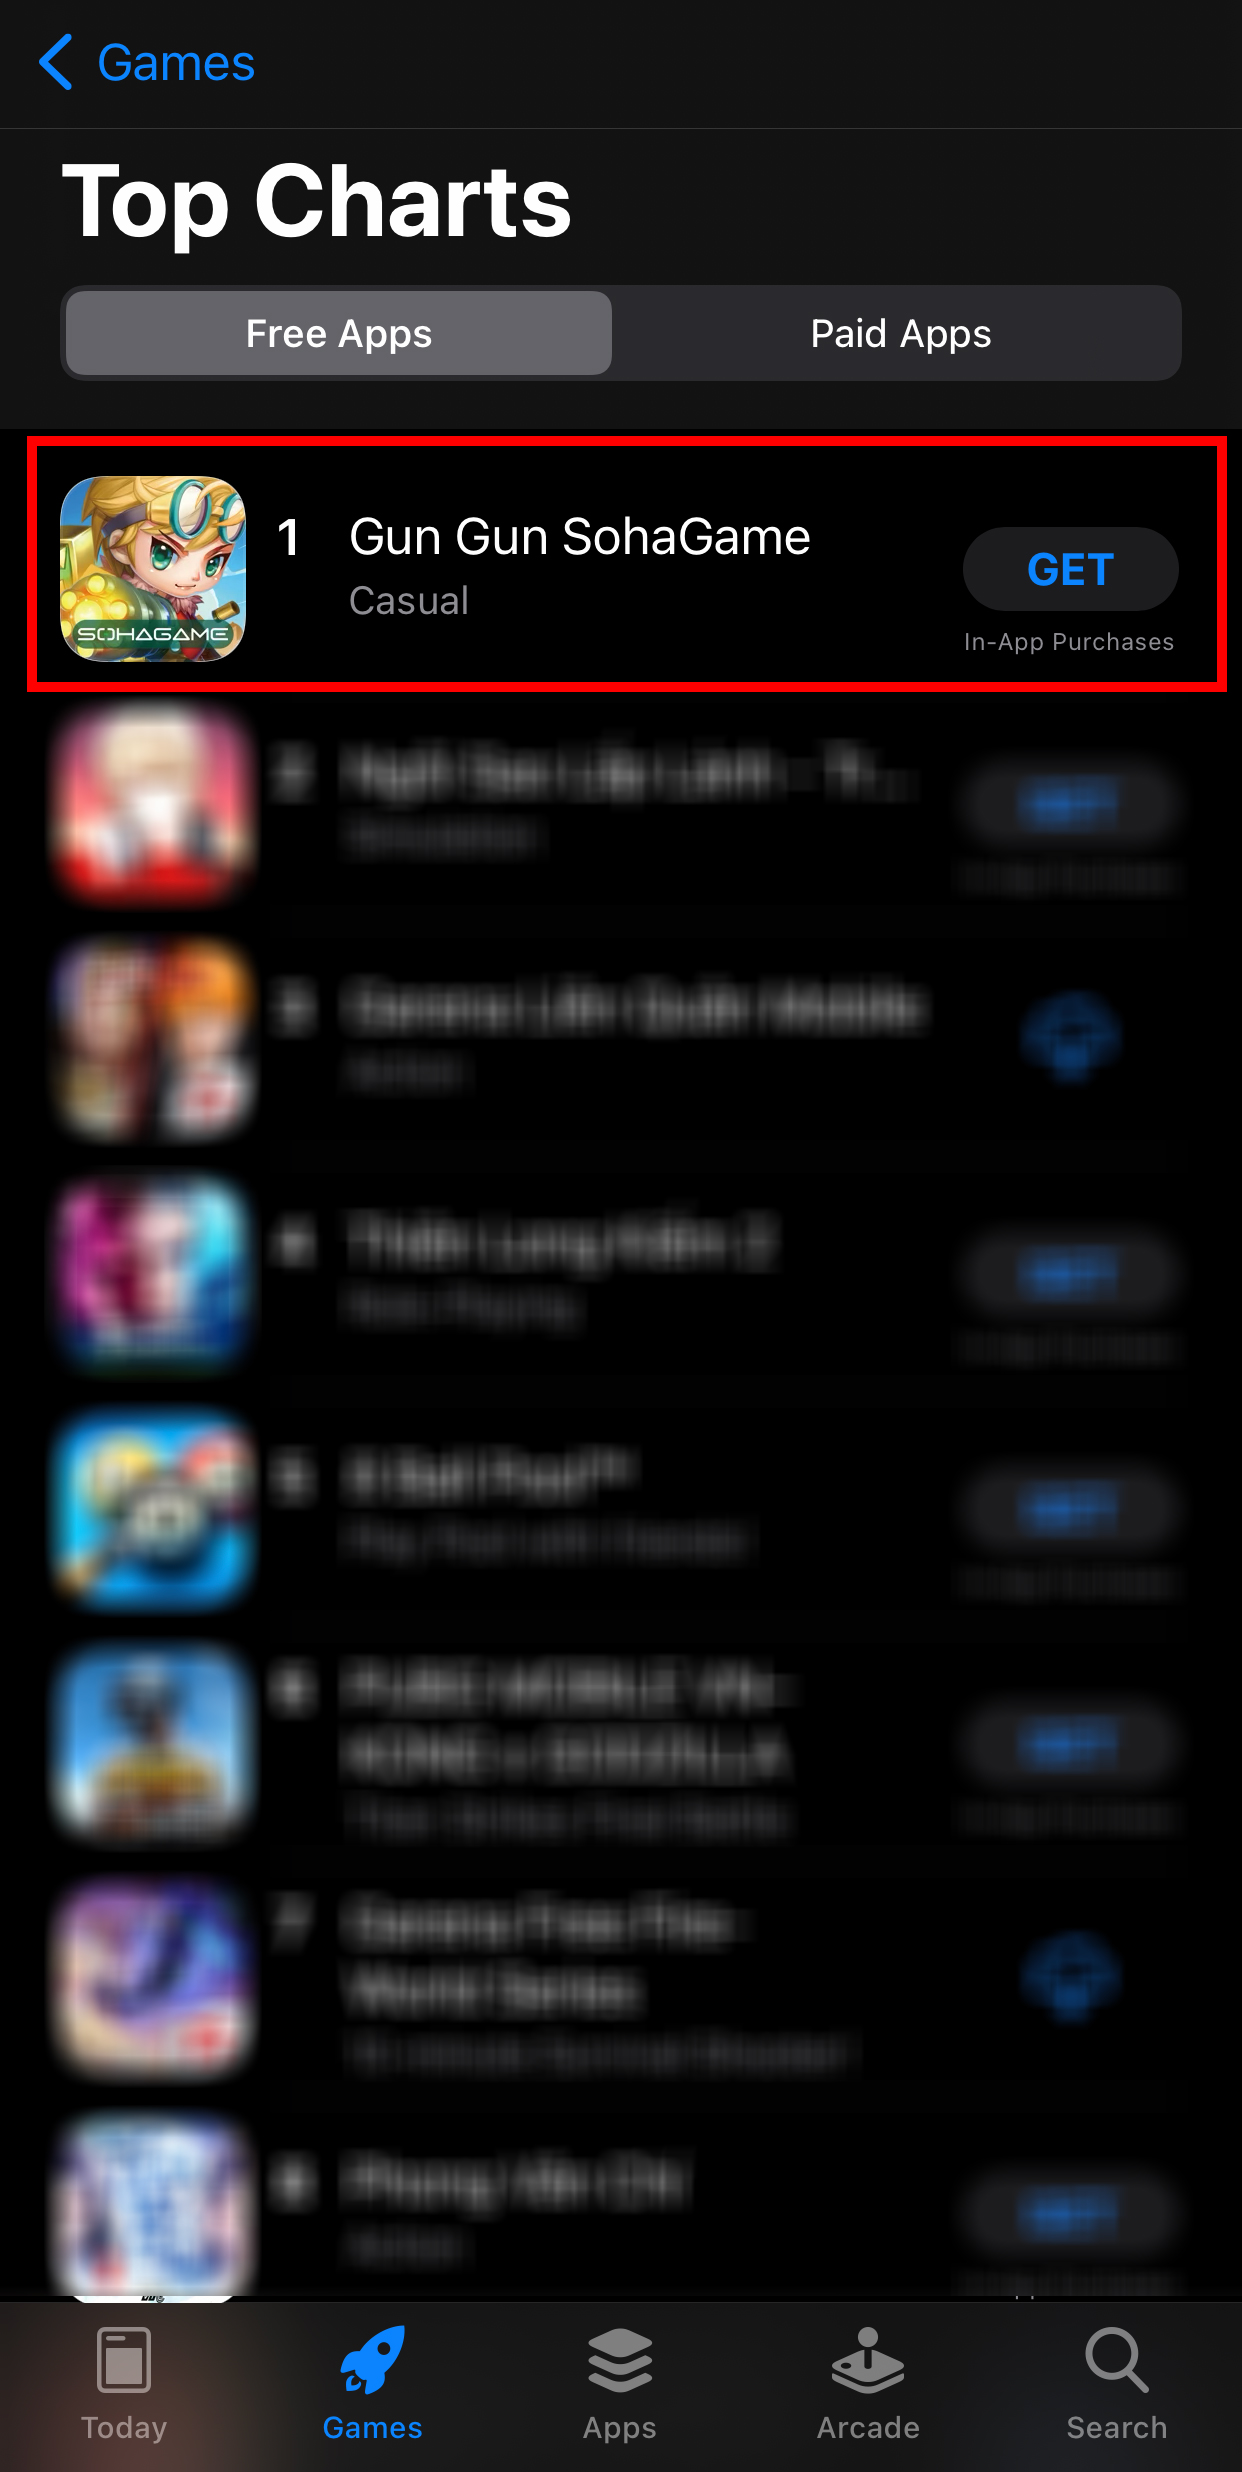 Game thánh địa gái xinh đã lọt vào TOP 1 của App Store, vượt mặt hàng loạt game quốc dân sau 2 năm phát hành - Ảnh 12.